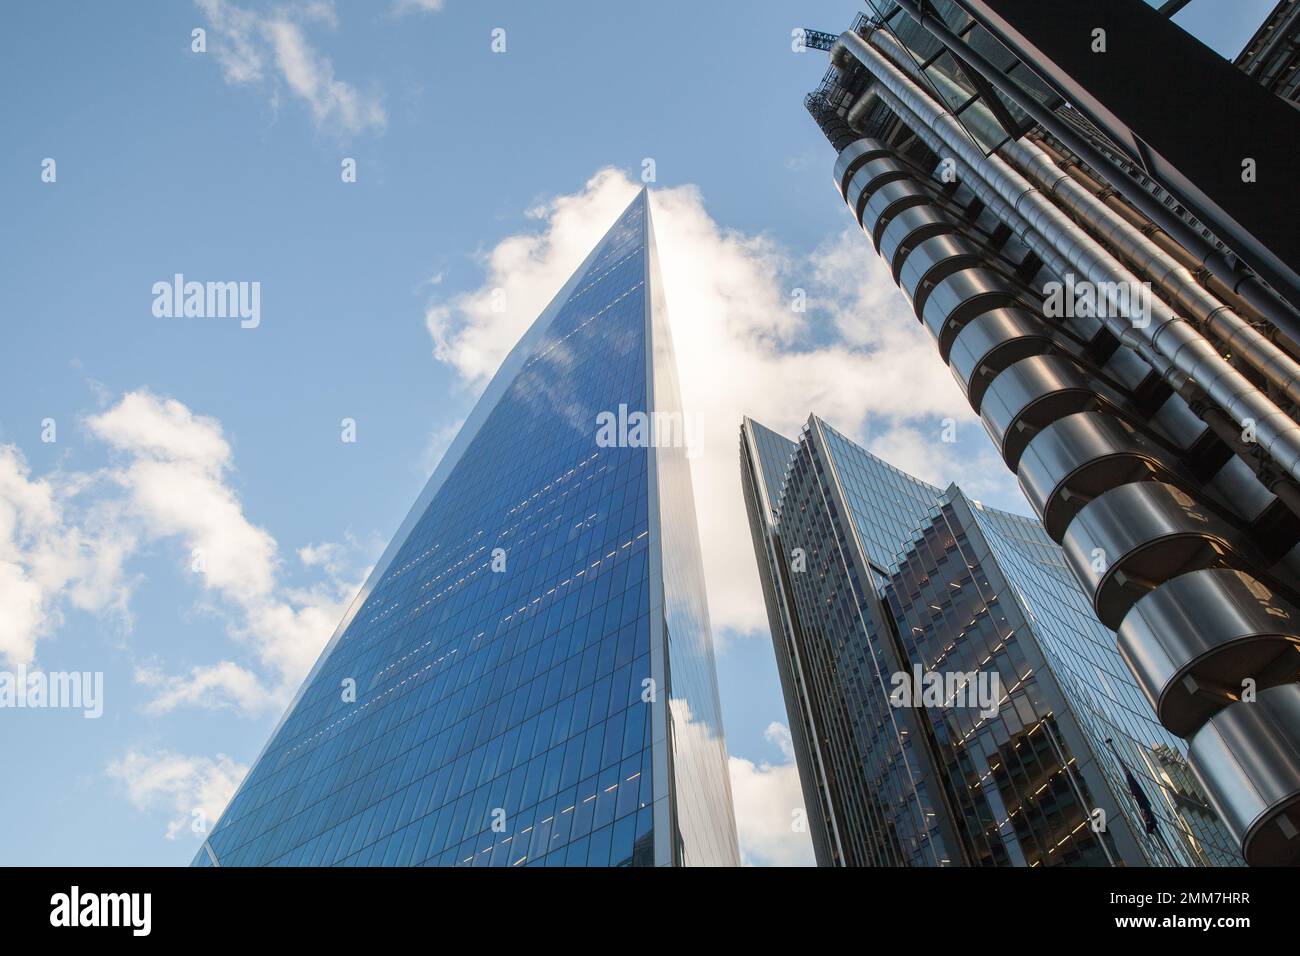 Londra, Regno Unito - 25 aprile 2019: Skyline di Londra con gli edifici Scalpel, Willis Towers Watson e Lloyds of London Foto Stock